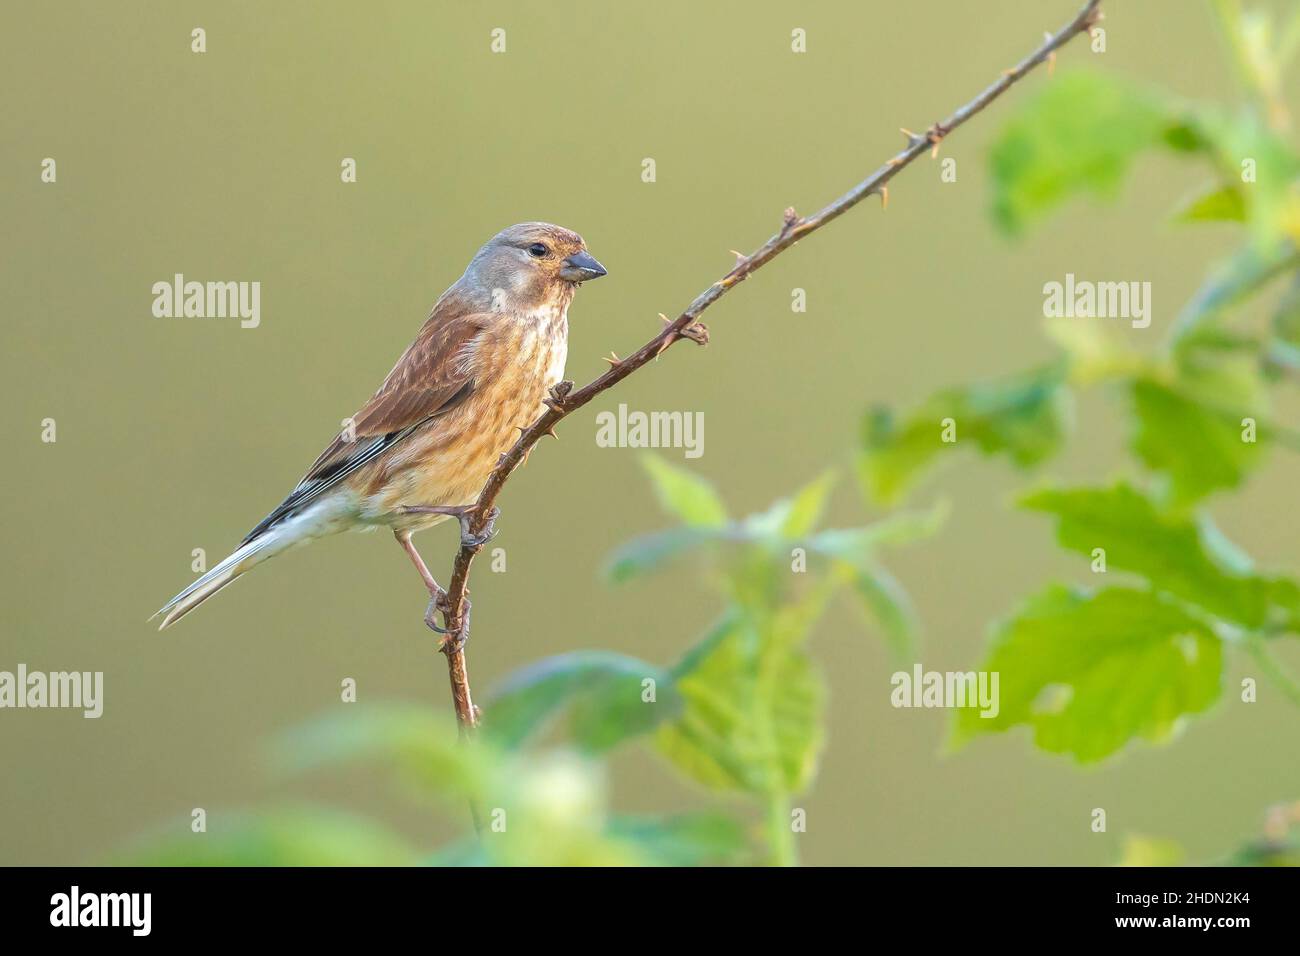 Nahaufnahme Porträt eines Linnet Vogel Weibchen, Carduelis cannabina, Anzeige und Suche nach einem Partner während der Frühjahrssaison. Singen in den frühen Morgenstunden su Stockfoto